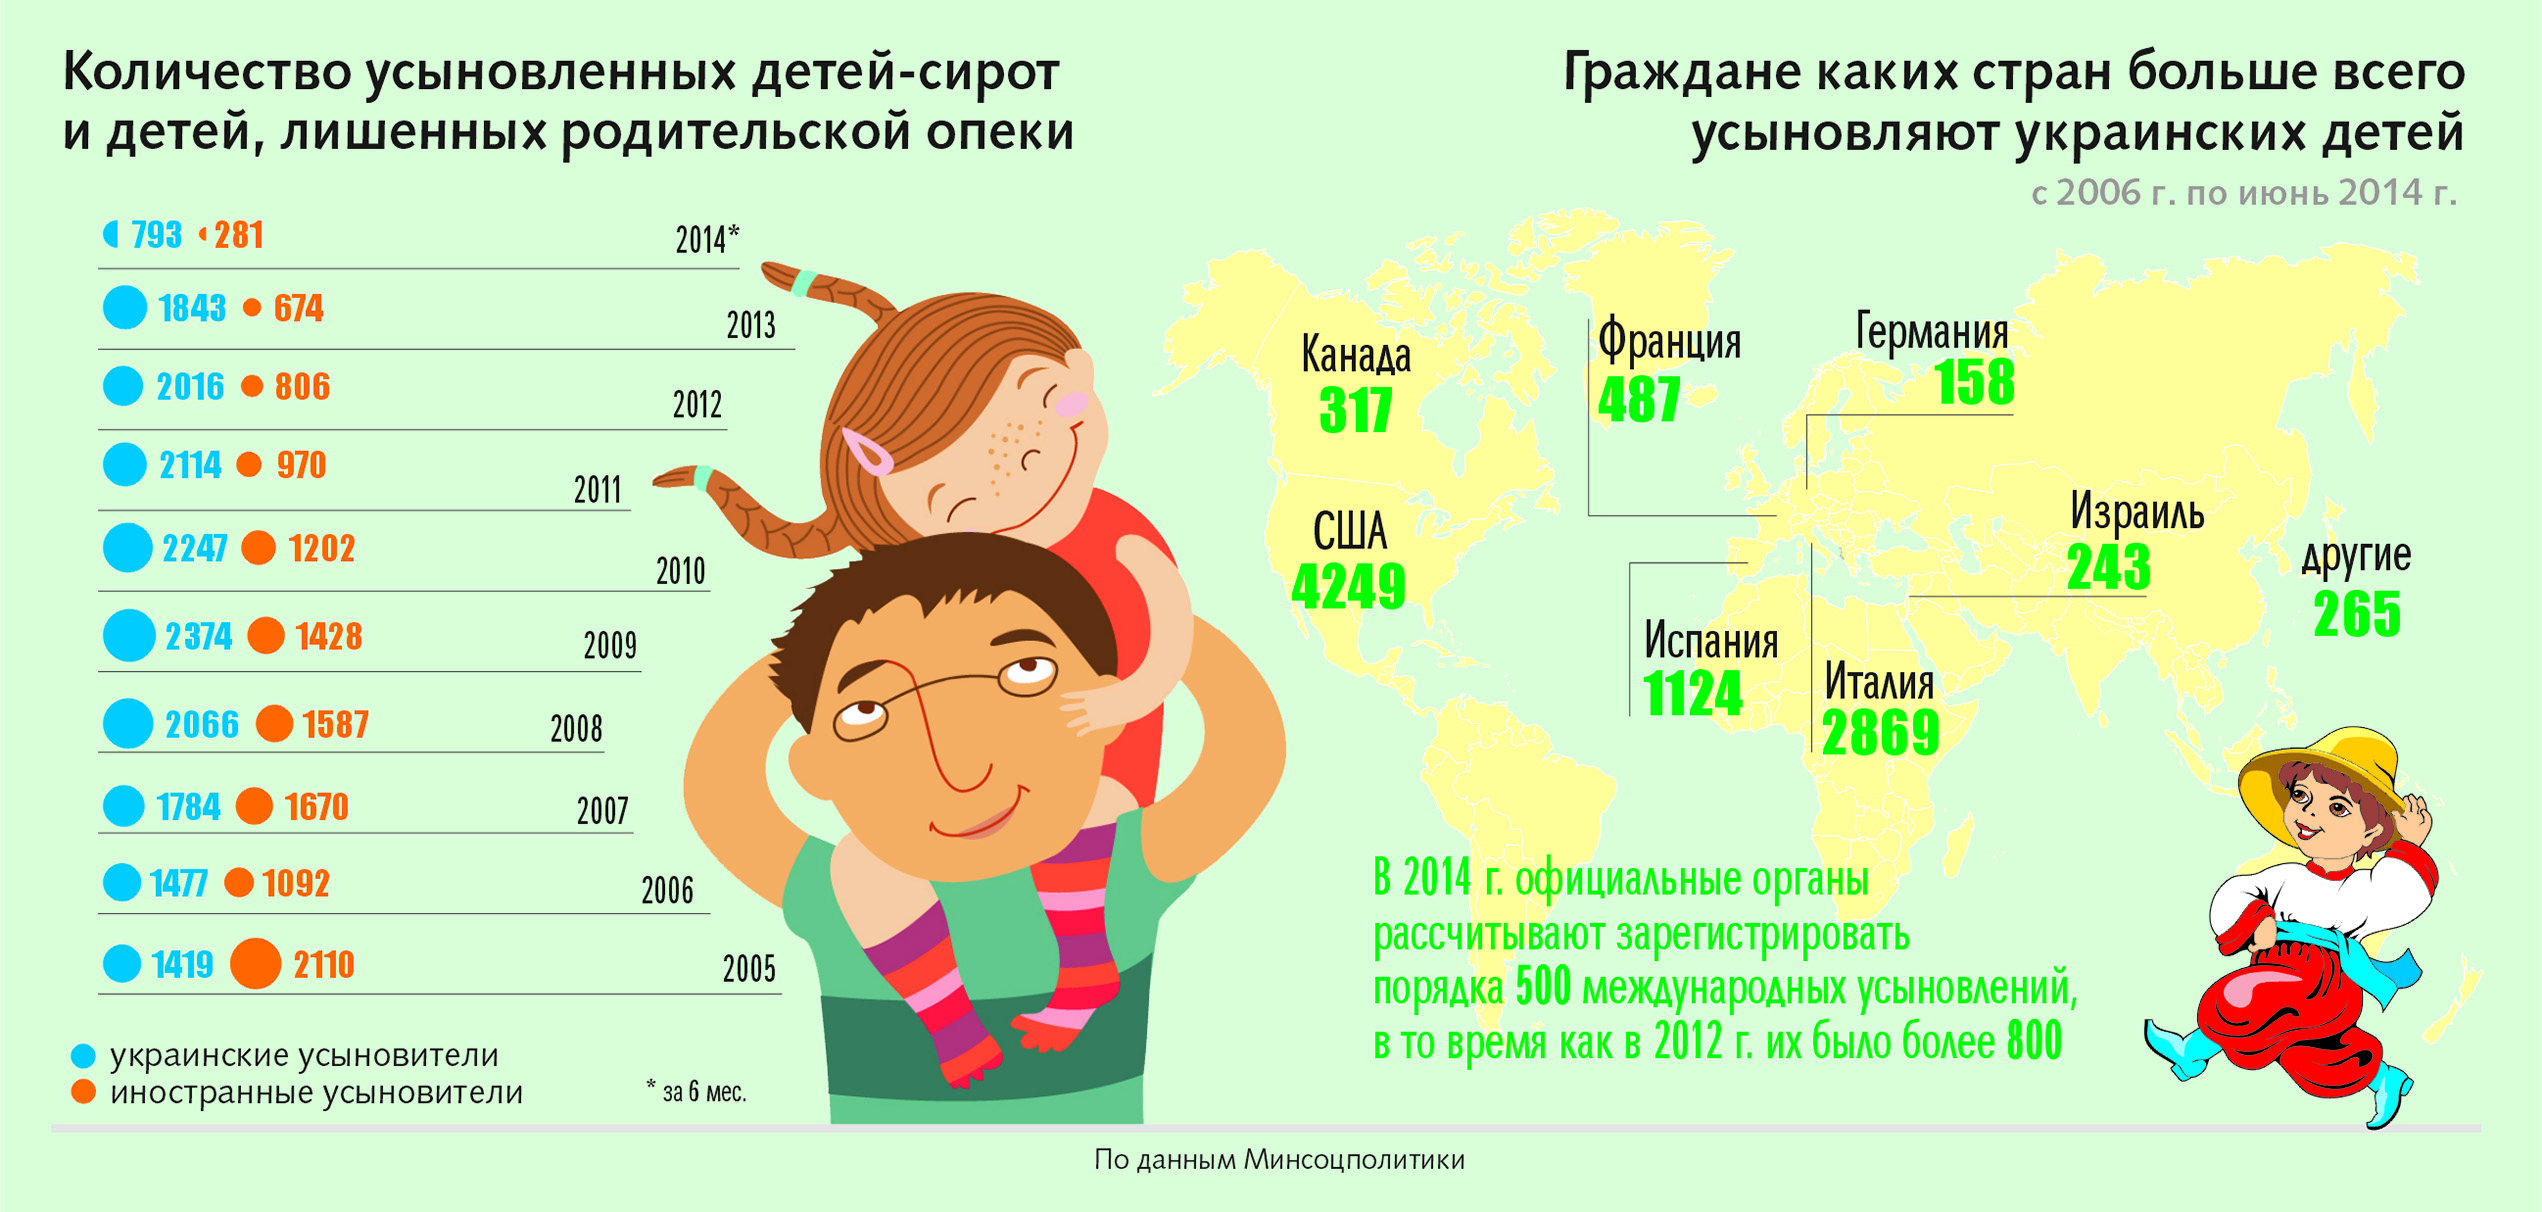 Наибольшее количество детей в семье. Статистика детей сирот по странам. Статистика детей сирот в России. Количество детей в стране. Количество сирот в мире по странам.